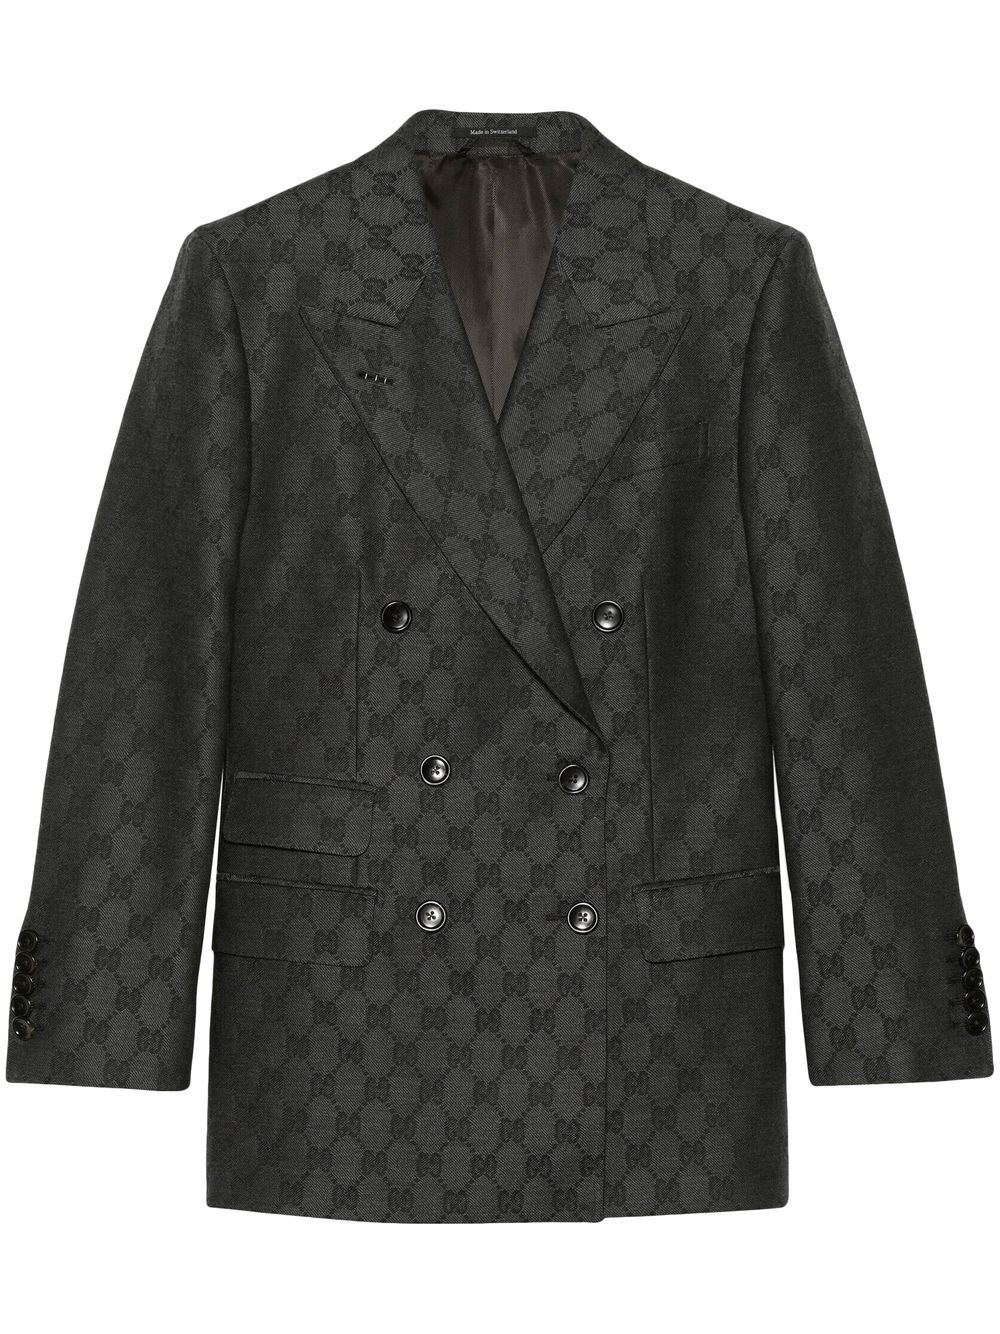 Image 1 of Gucci blazer con monograma y doble botonadura